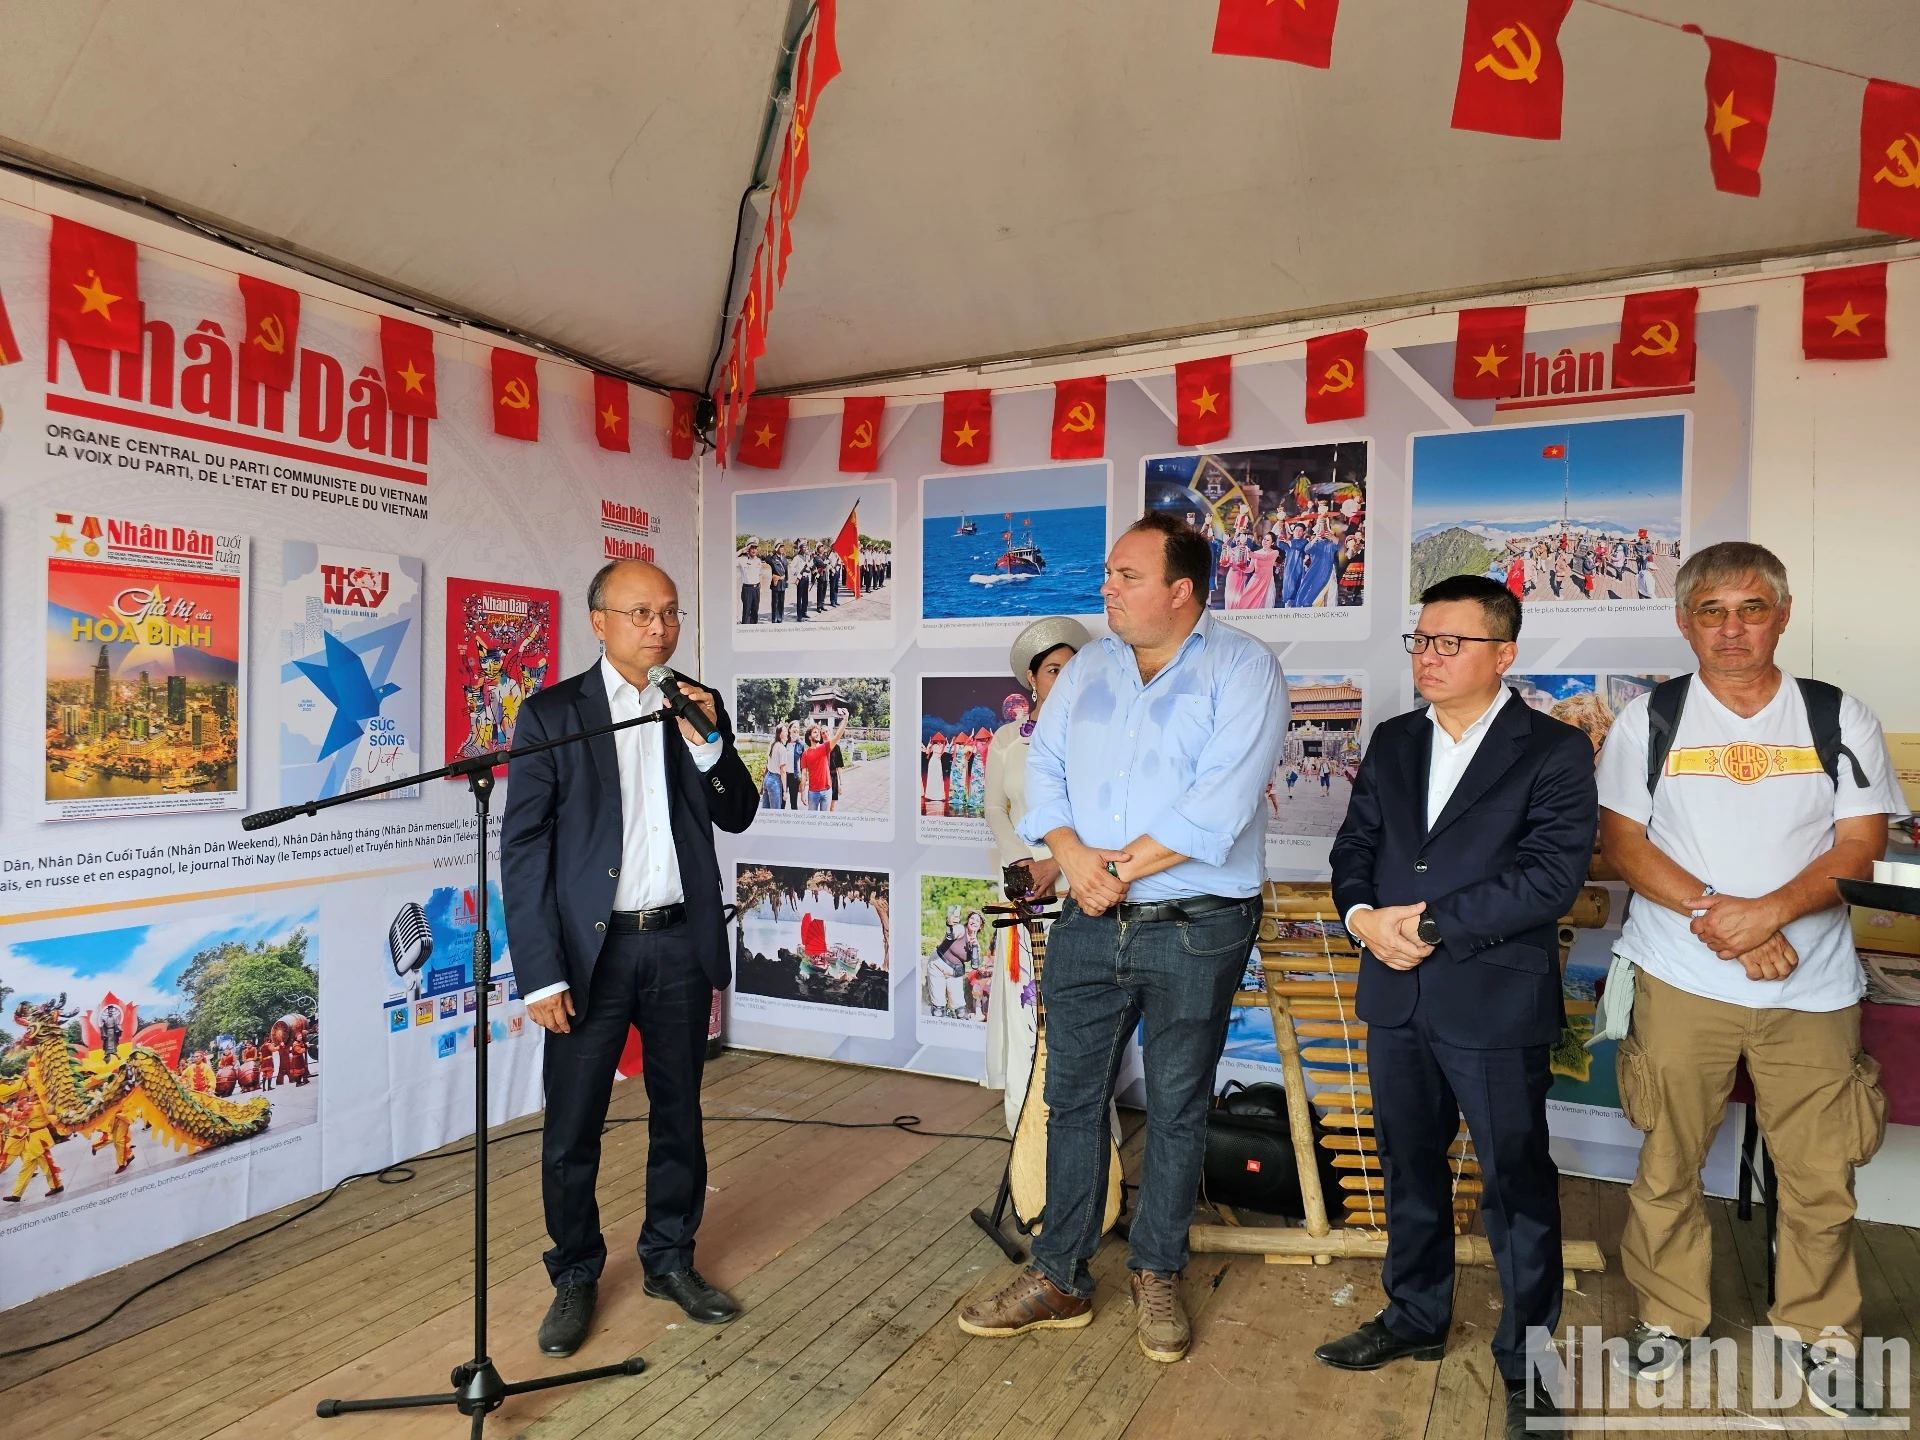 Đại sứ Việt Nam tại Pháp Đinh Toàn Thắng nhấn mạnh ý nghĩa của các hoạt động tại gian trưng bày do Báo Nhân Dân tổ chức, góp phần quảng bá Việt Nam và tăng cường giao lưu với bạn bè quốc tế